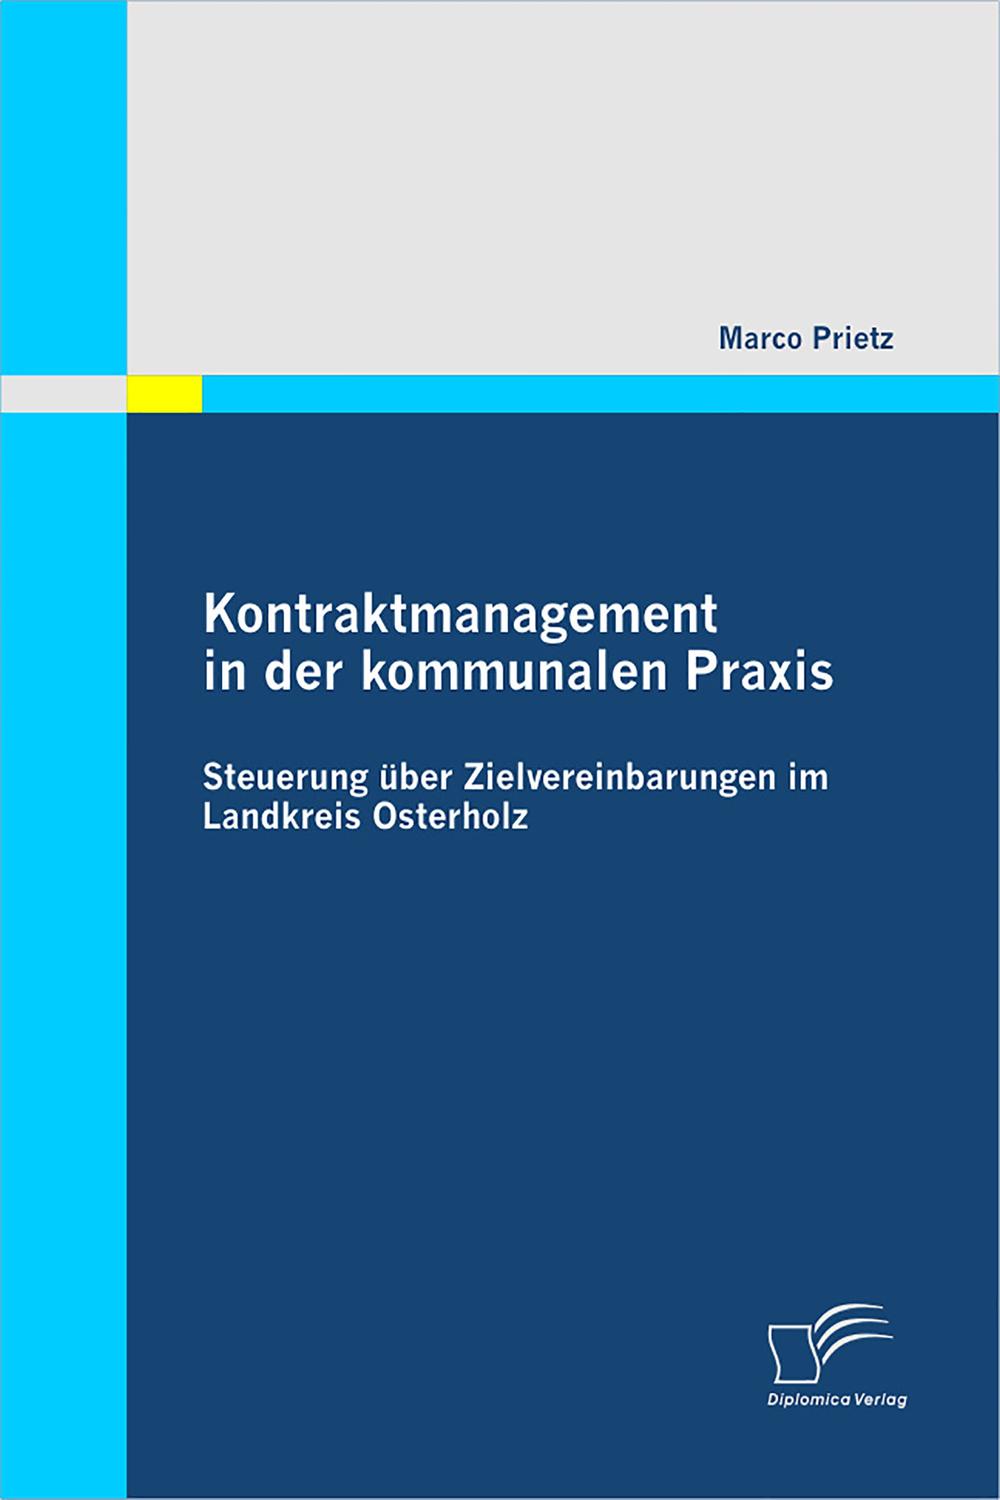 Kontraktmanagement in der kommunalen Praxis: Steuerung über Zielvereinbarungen im Landkreis Osterholz - Marco Prietz